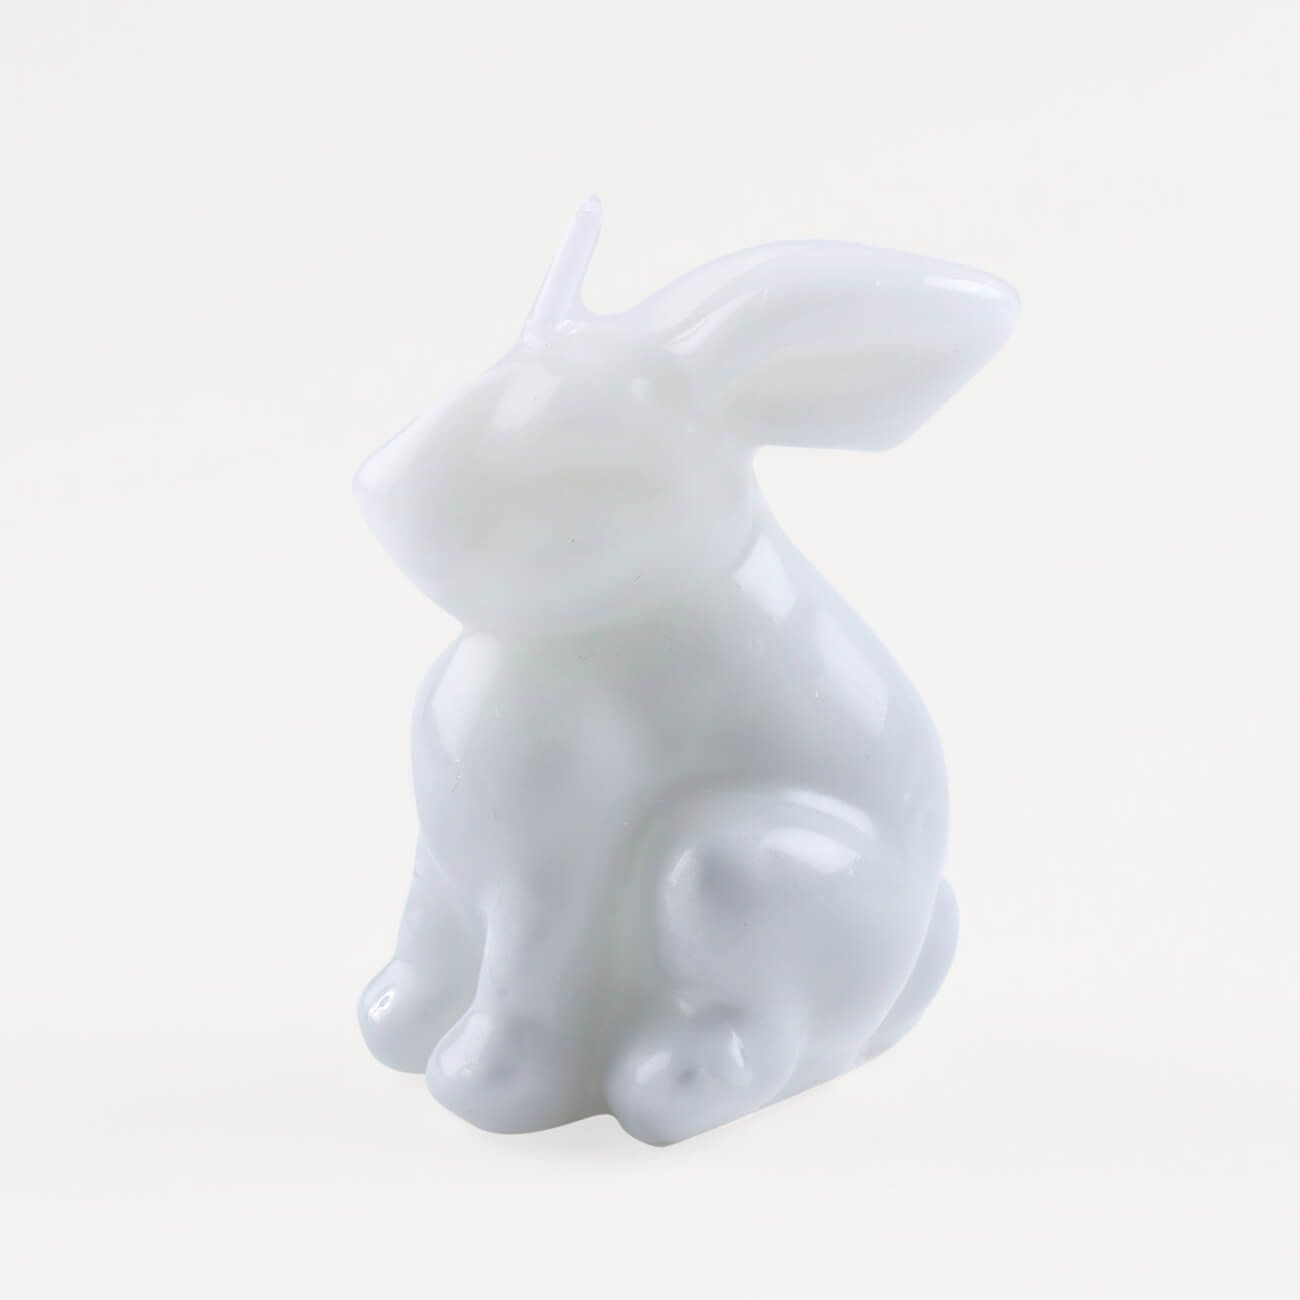 игрушка 30 см мягкая с подвижными лапами полиэстер светло серая кролик rabbit toy Свеча, 9 см, бело-серая, Кролик, Rabbit